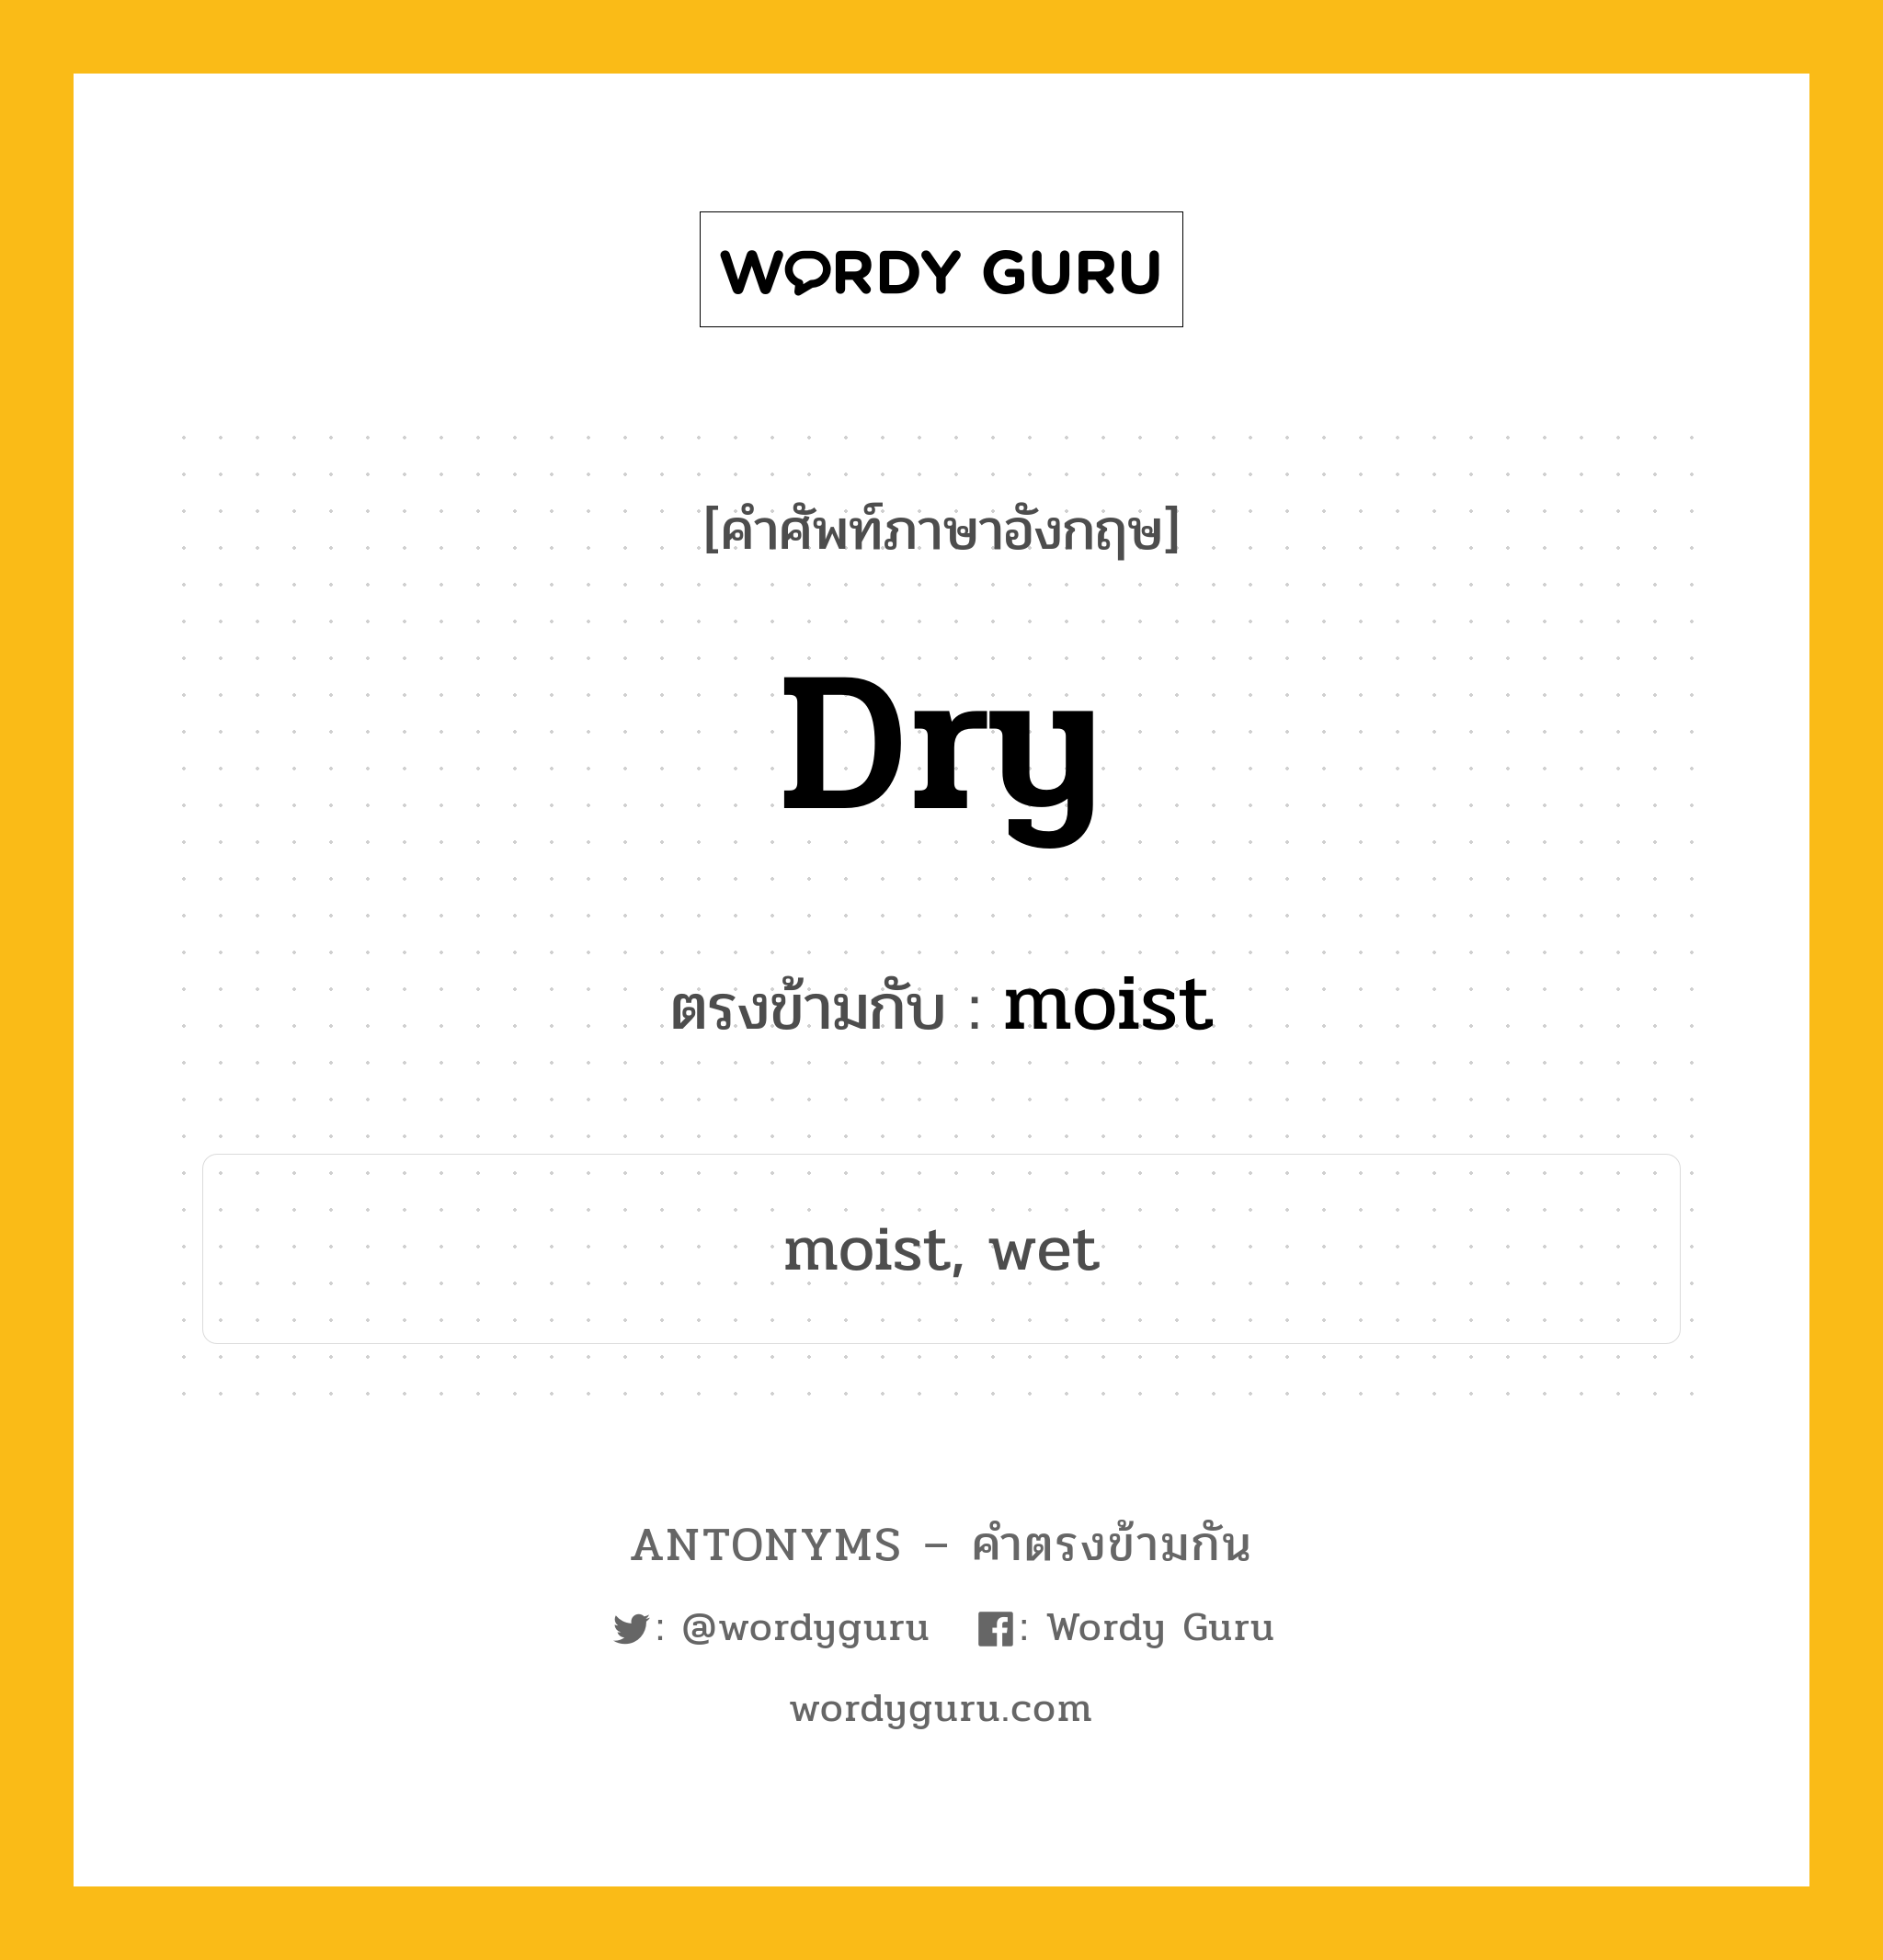 dry เป็นคำตรงข้ามกับคำไหนบ้าง?, คำศัพท์ภาษาอังกฤษ dry ตรงข้ามกับ moist หมวด moist